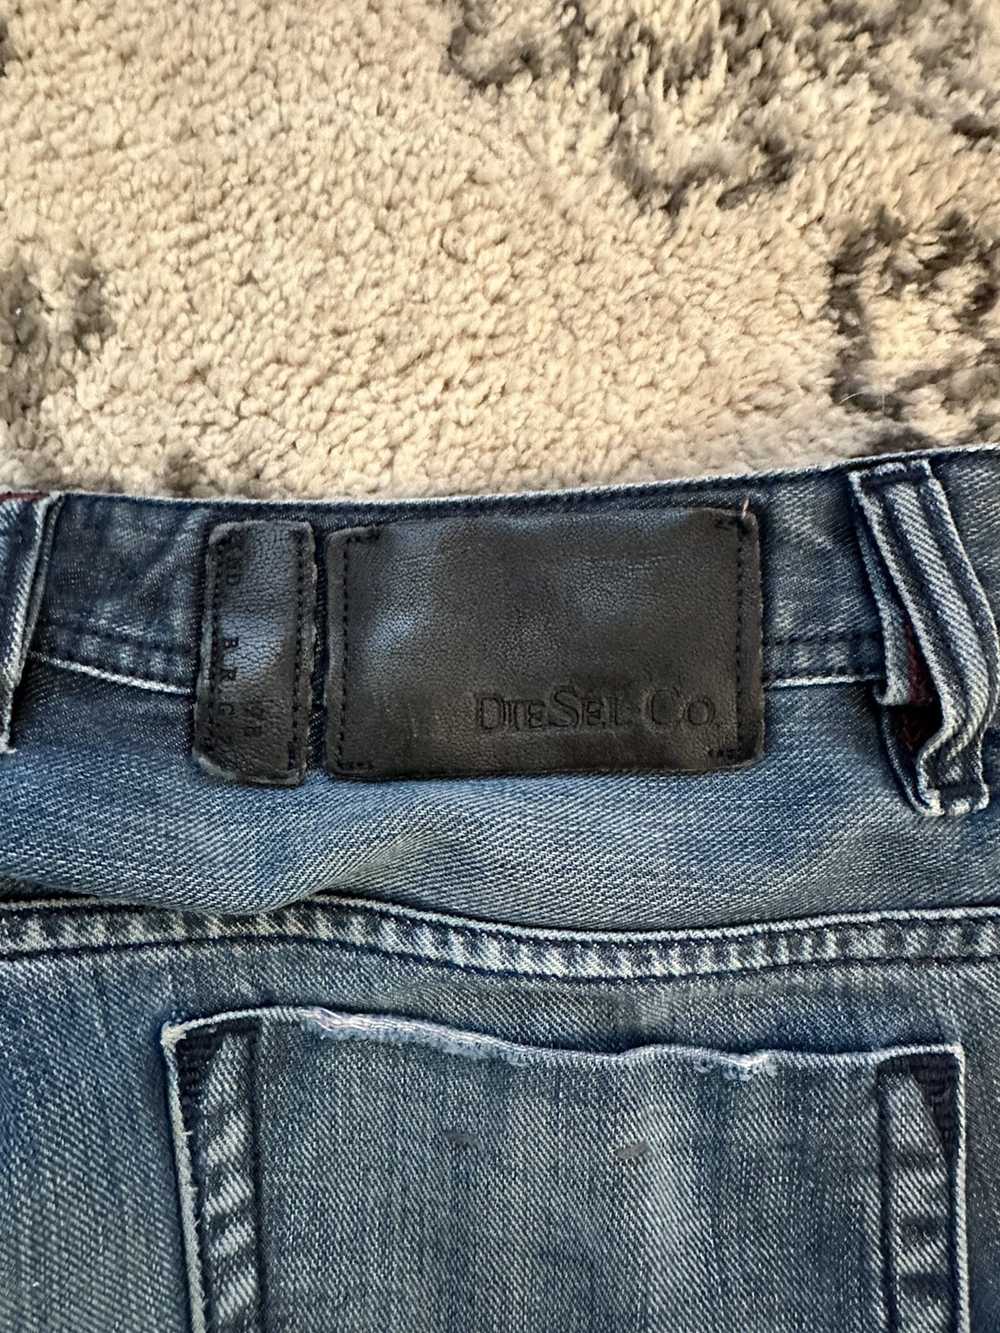 Diesel Safado Slim Straight Faded Diesel Jeans - image 3